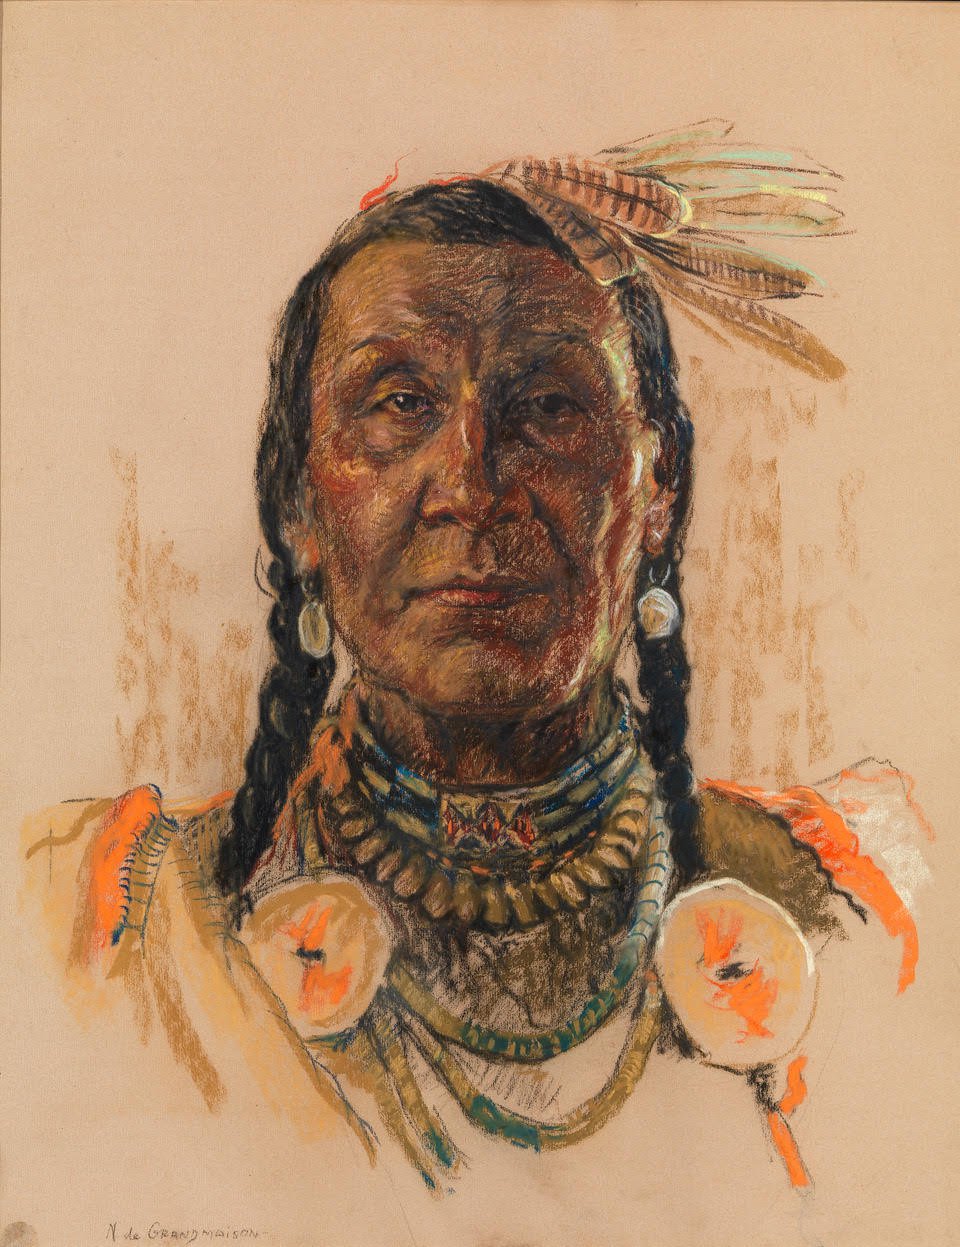 Nicholas de Grandmaison, Indigenous Portrait (Chief Eagle Plume)," n.d.